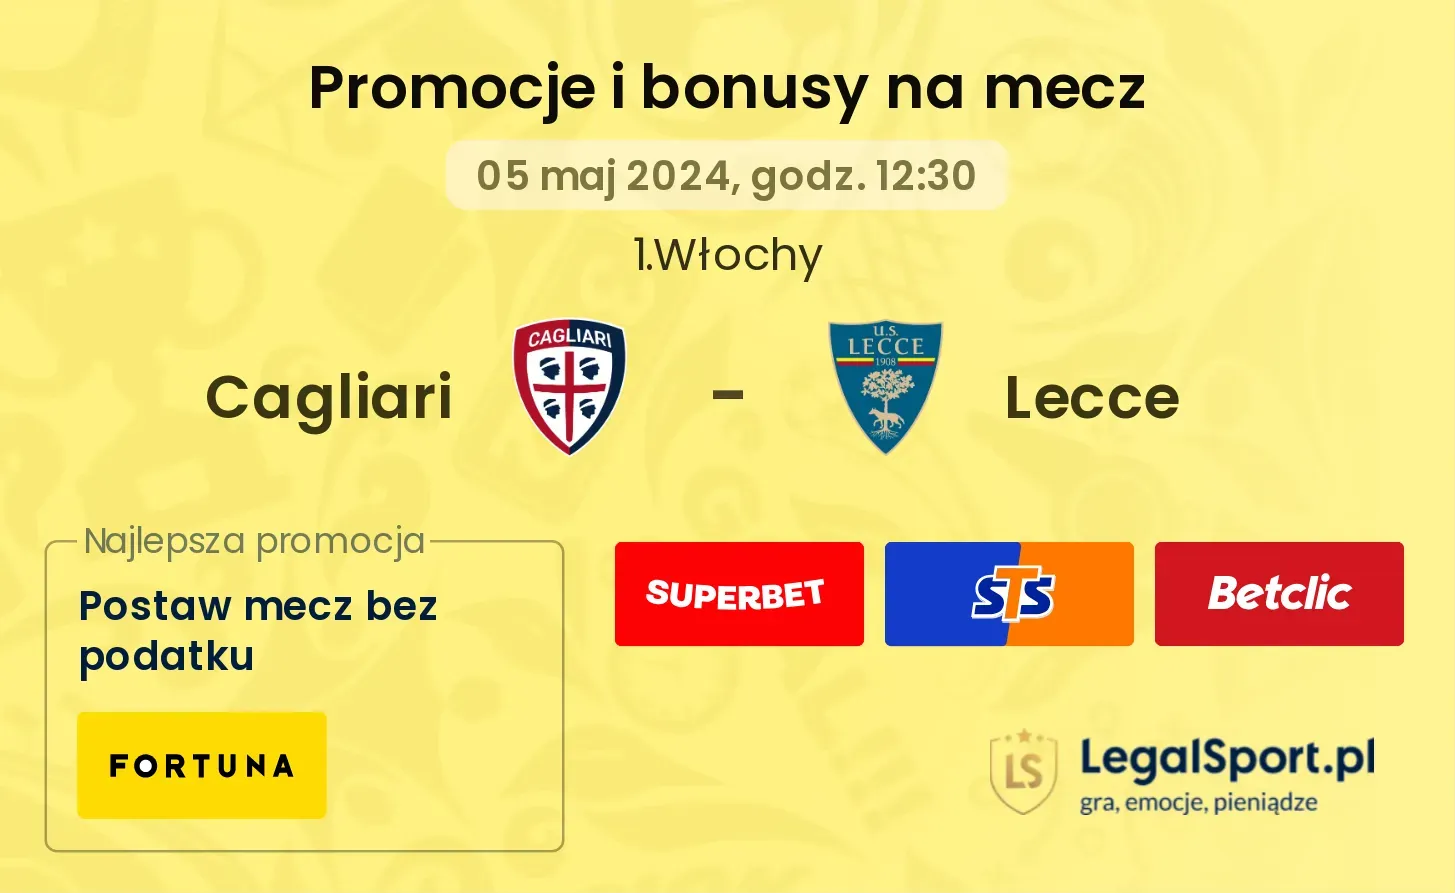 Cagliari - Lecce promocje bonusy na mecz